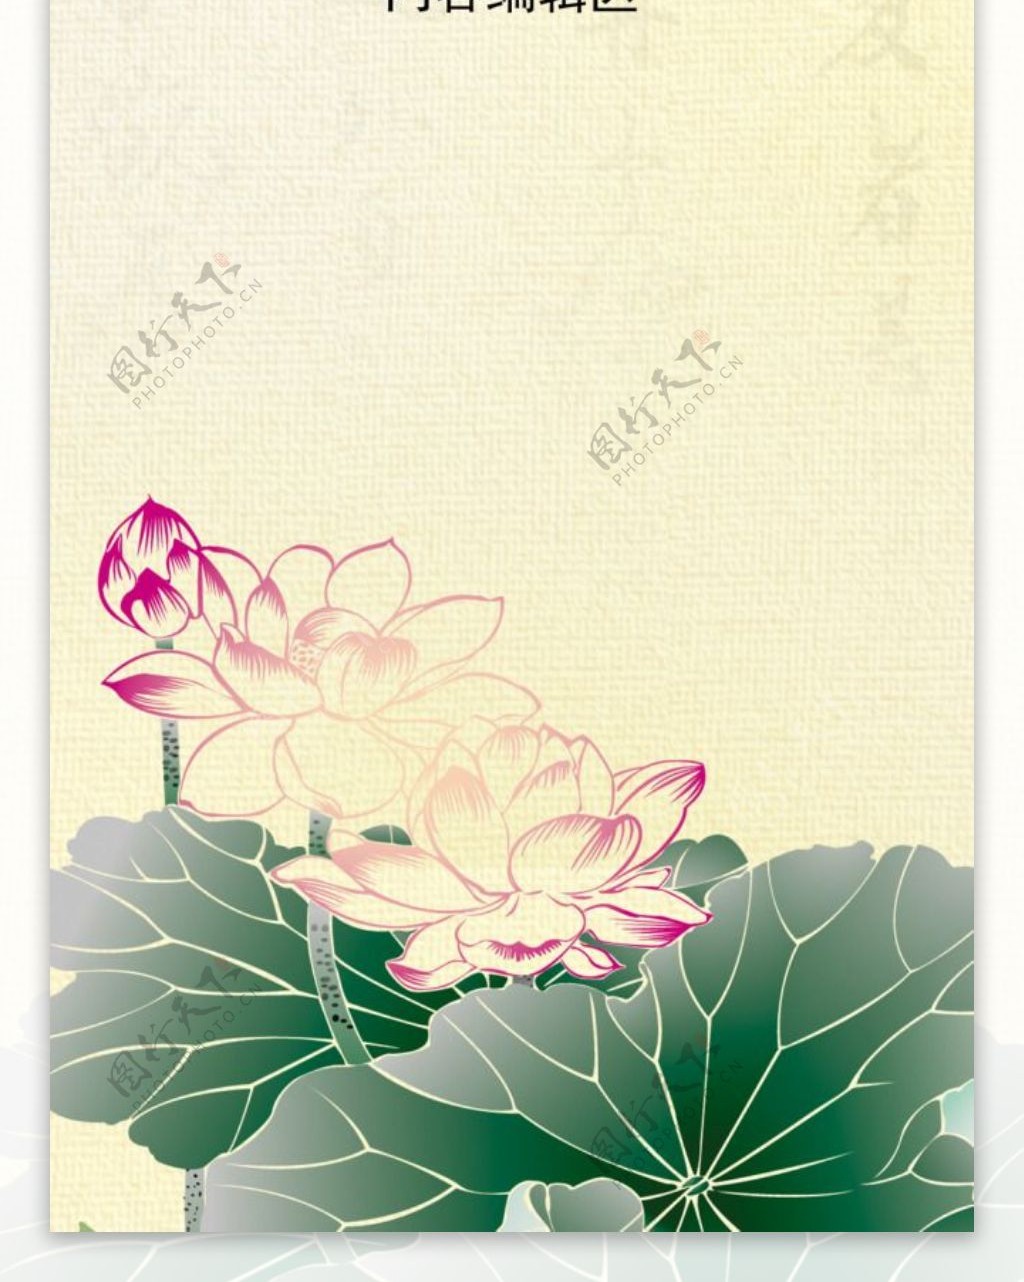 精美简约中国风古典水墨展架设计模板素材